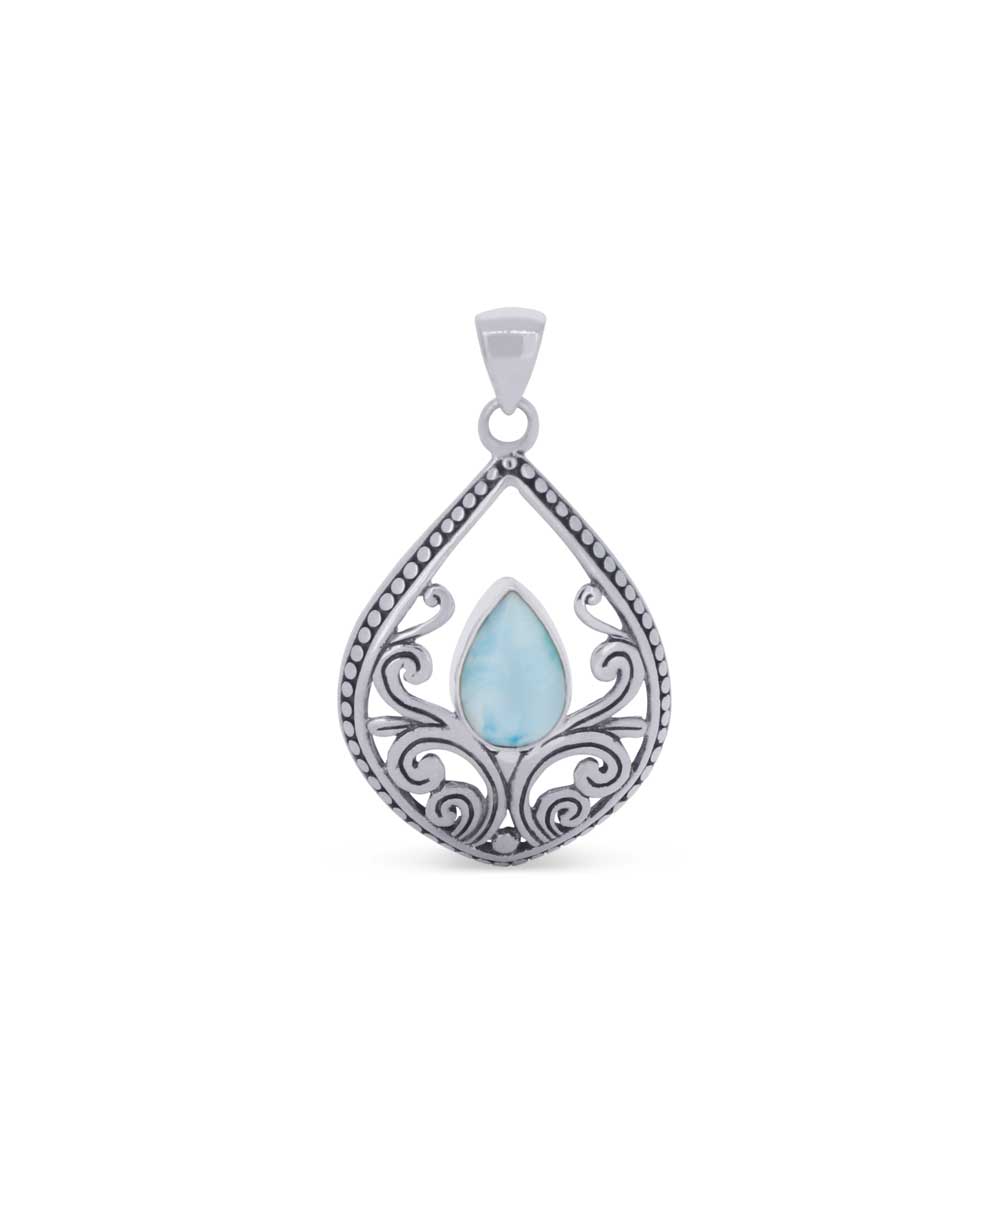 Teardrop larimar pendant with vine design